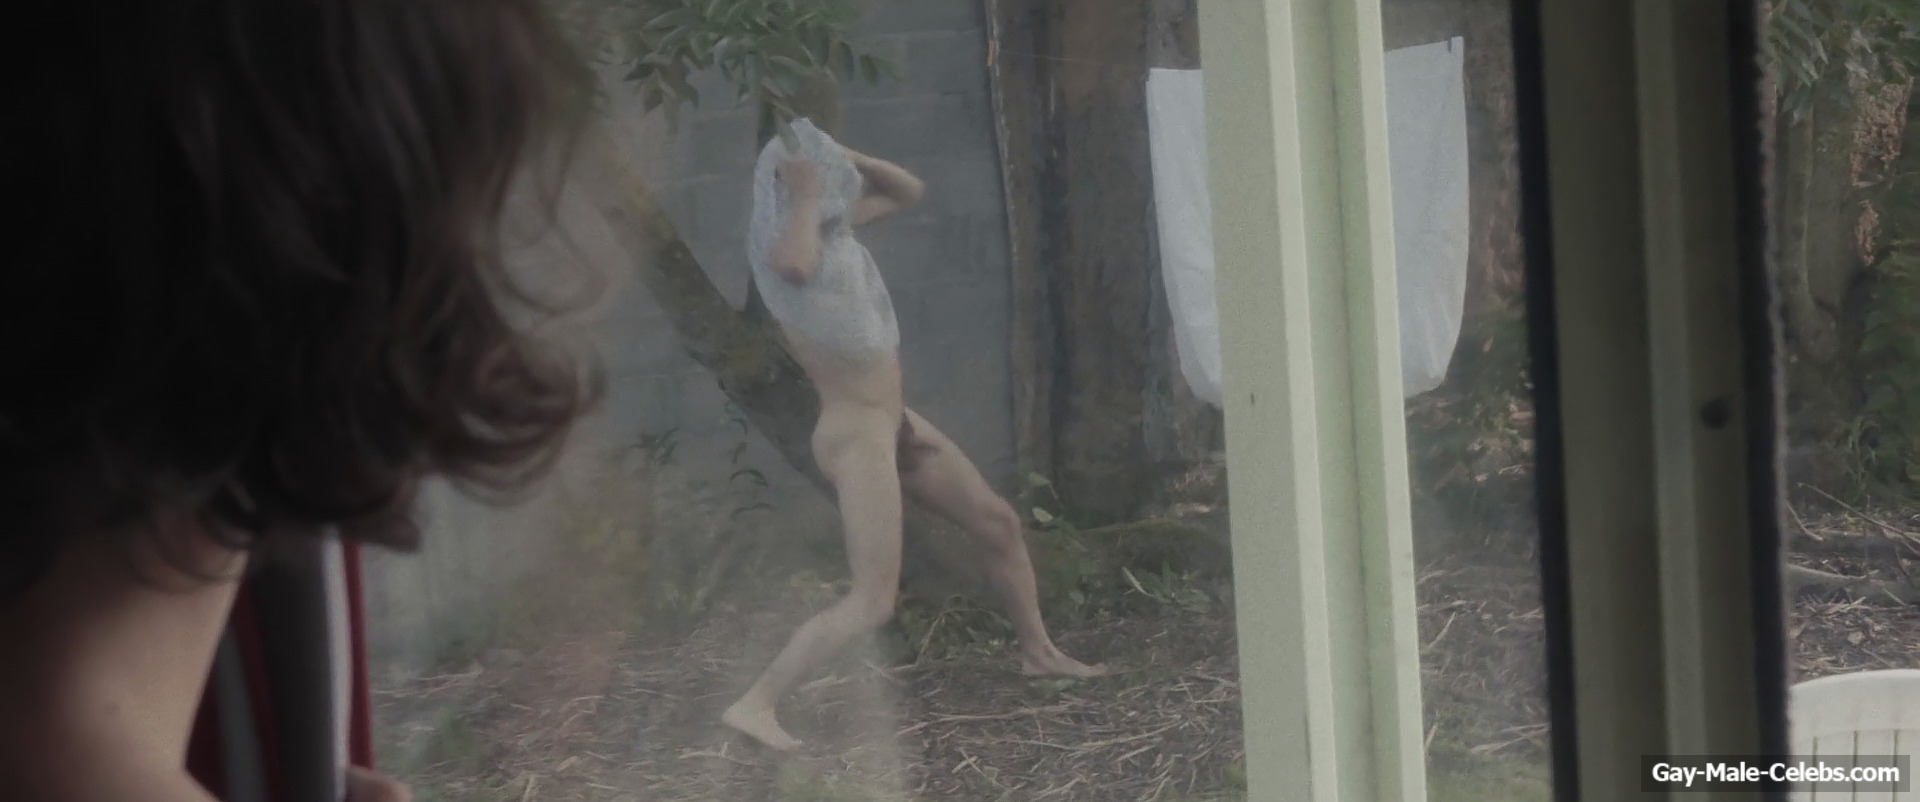 Jules Sagot frontal nude photos